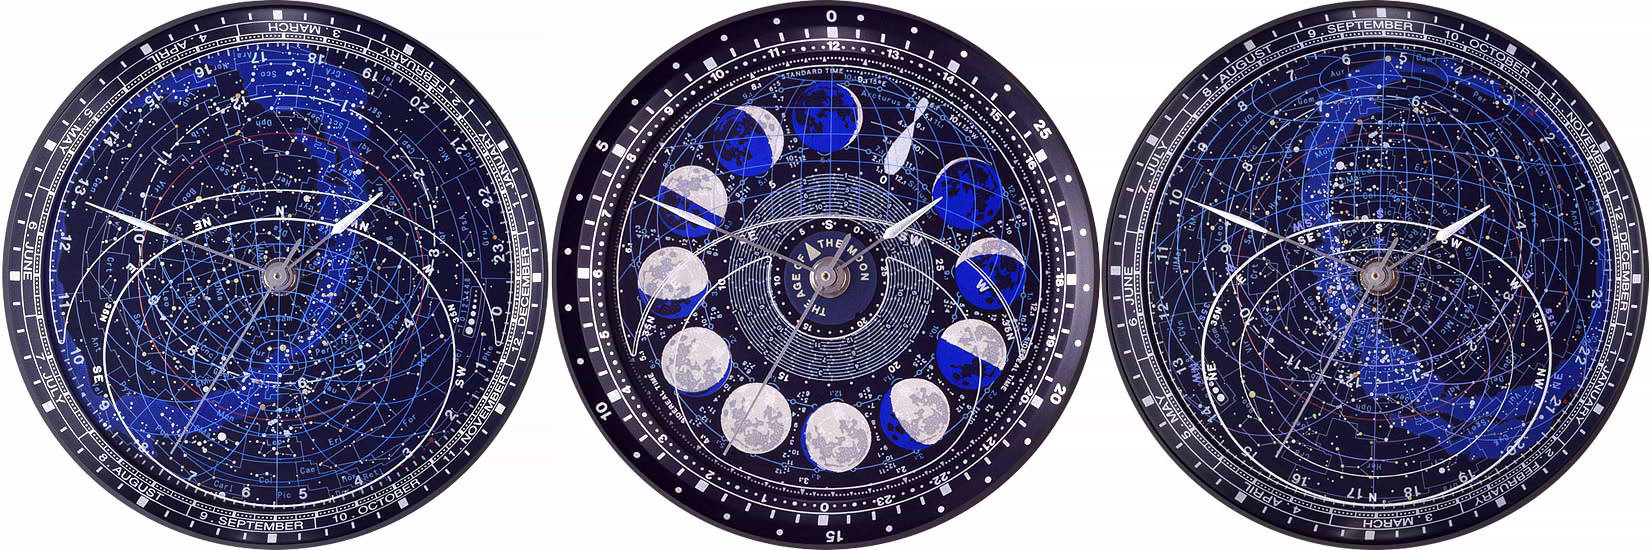 宇宙を身近に感じる時計「アストロデア」 - GIGAZINE